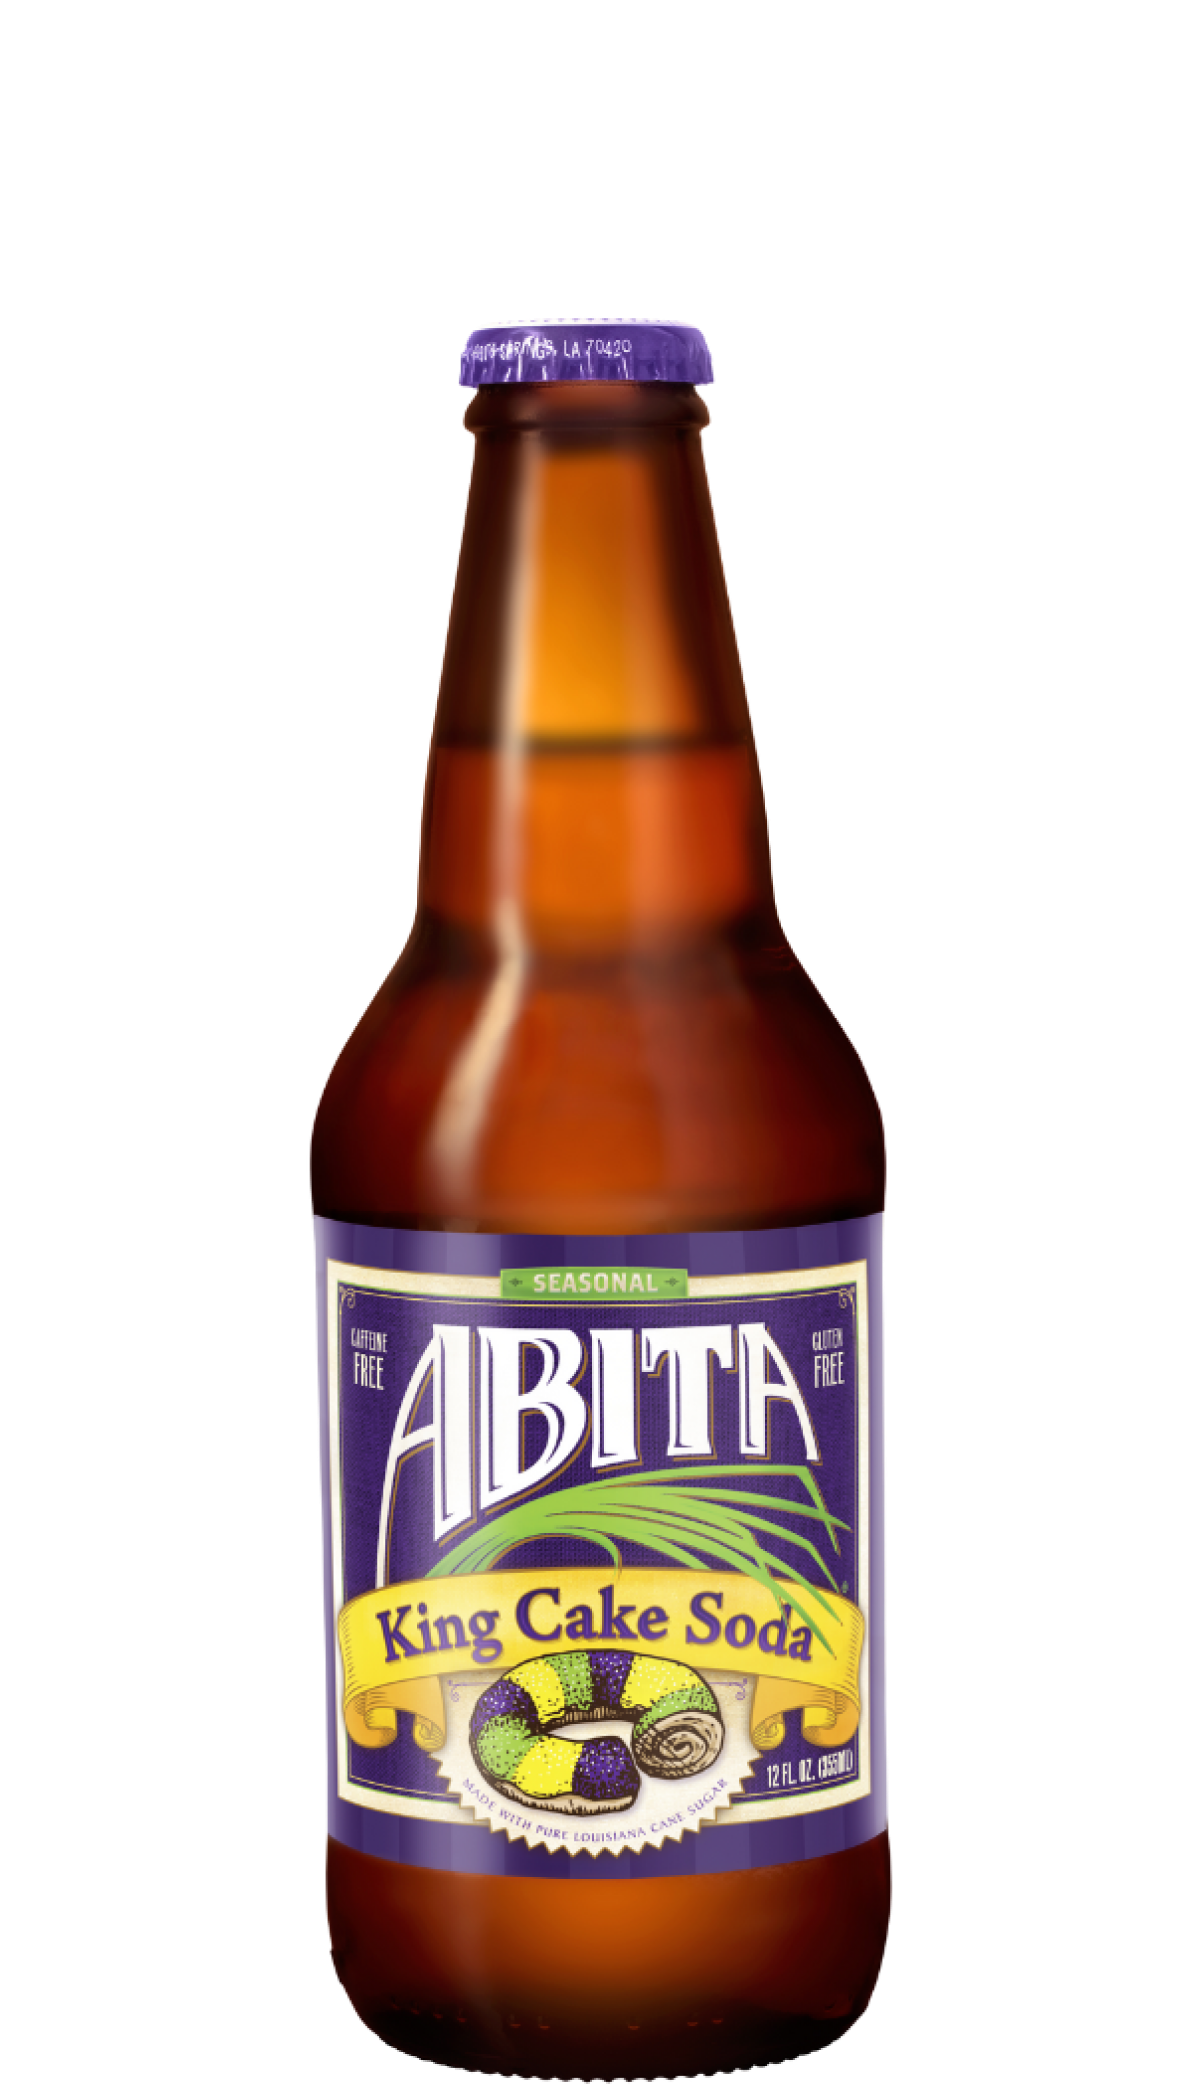 Bottle of seasonal King Cake Soda from Abita Brewing Company.